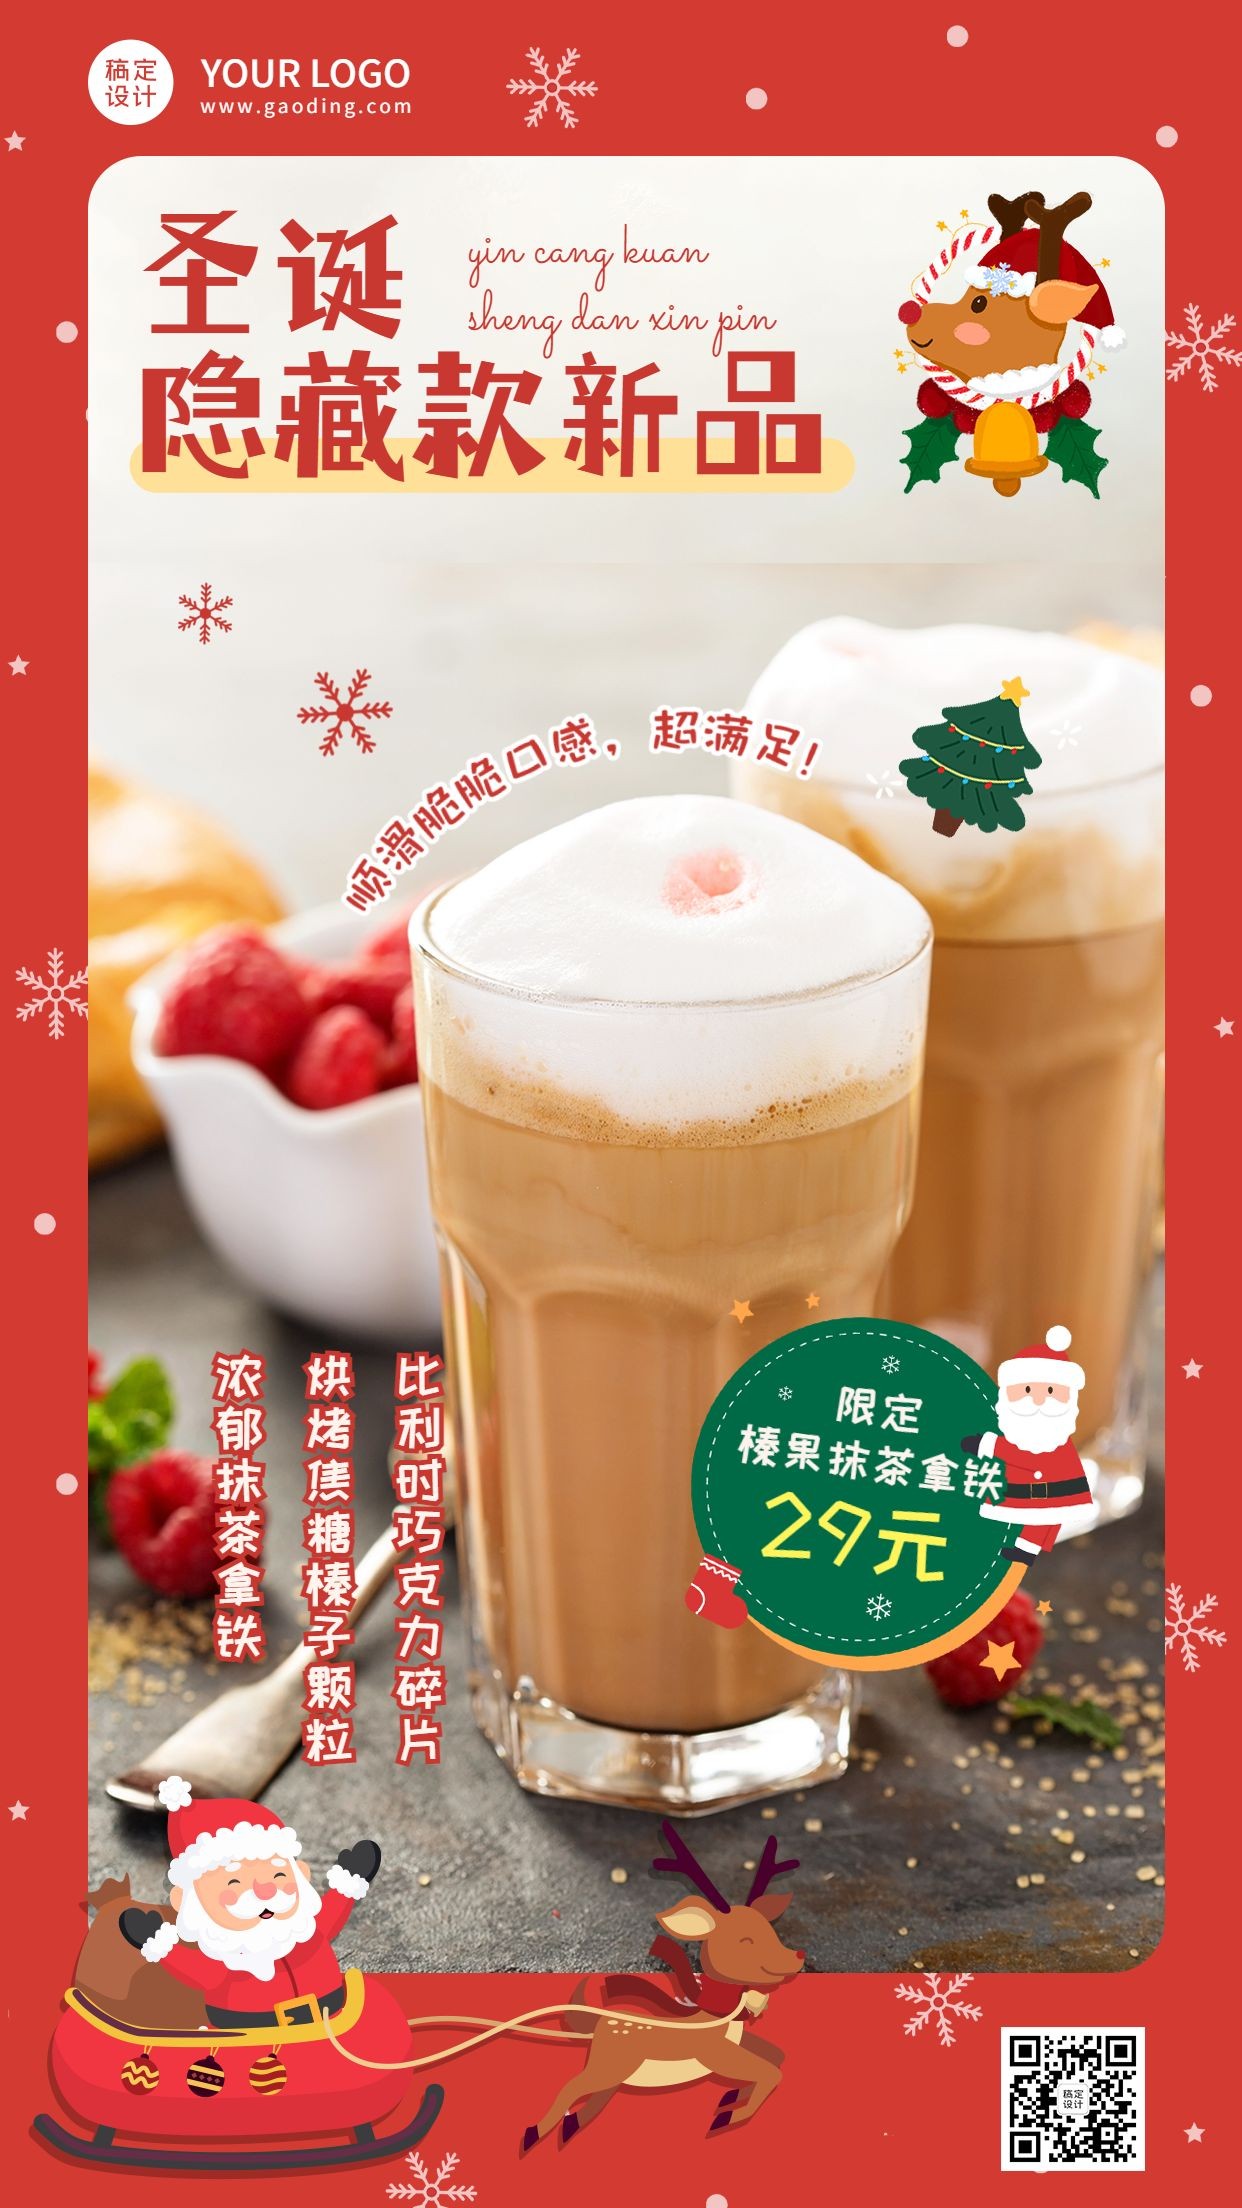 圣诞节奶茶饮品营销圣诞老人海报预览效果